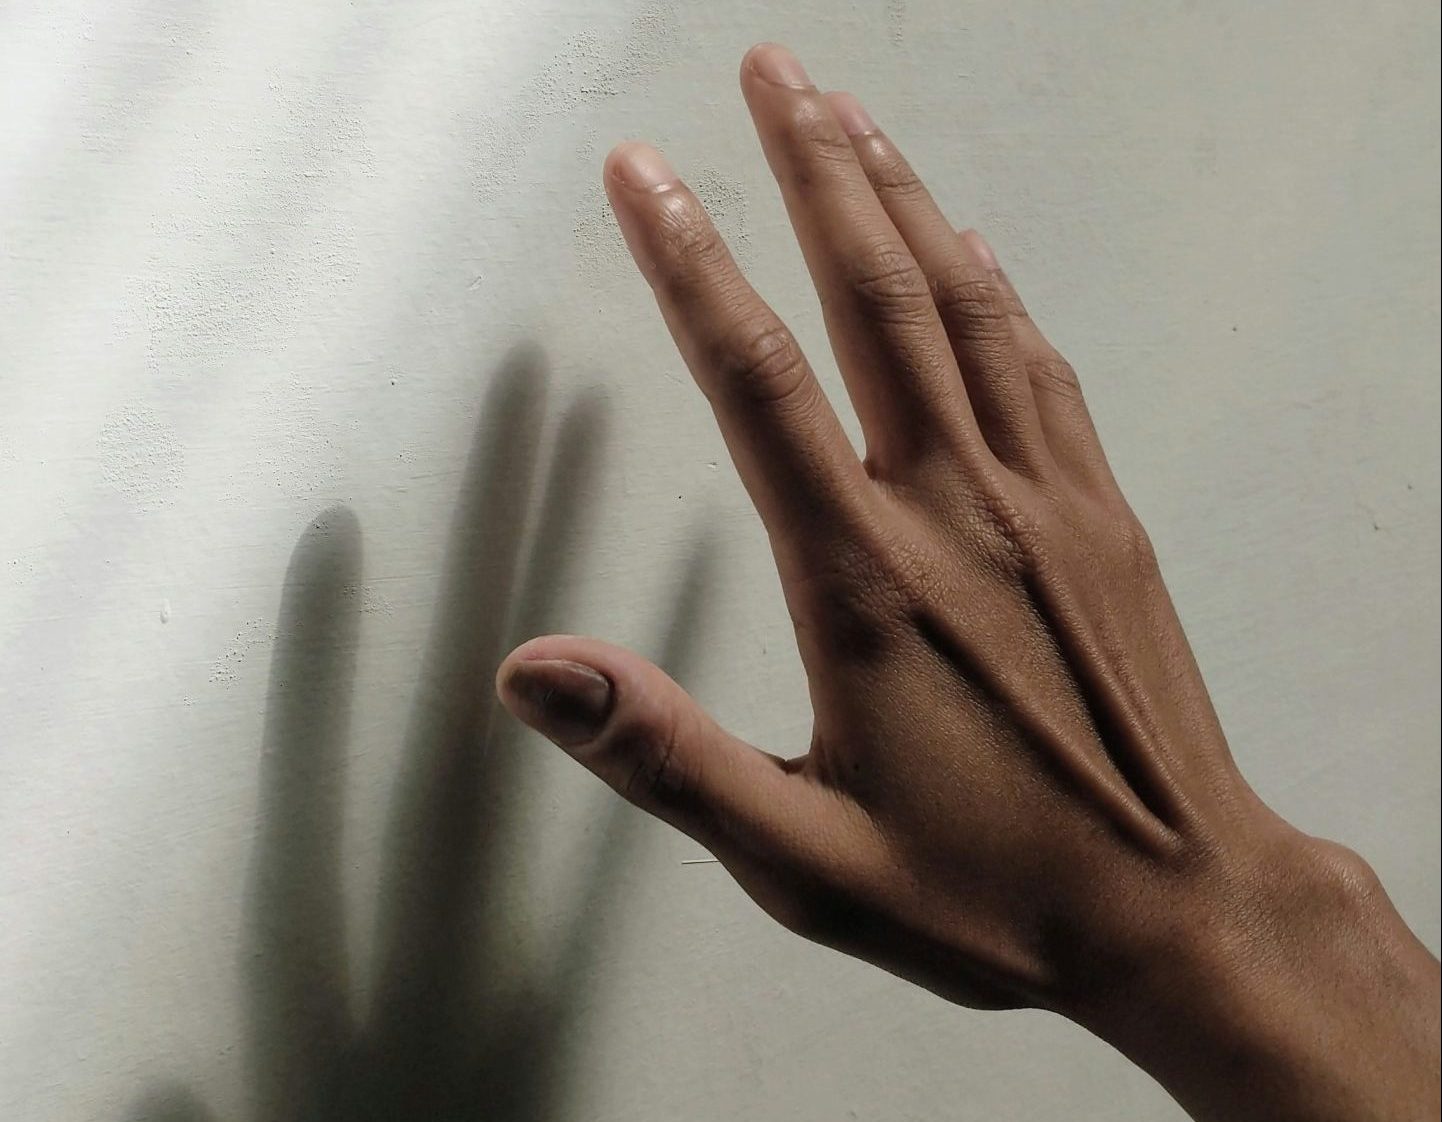 A medium-toned hand reaches toward a white wall